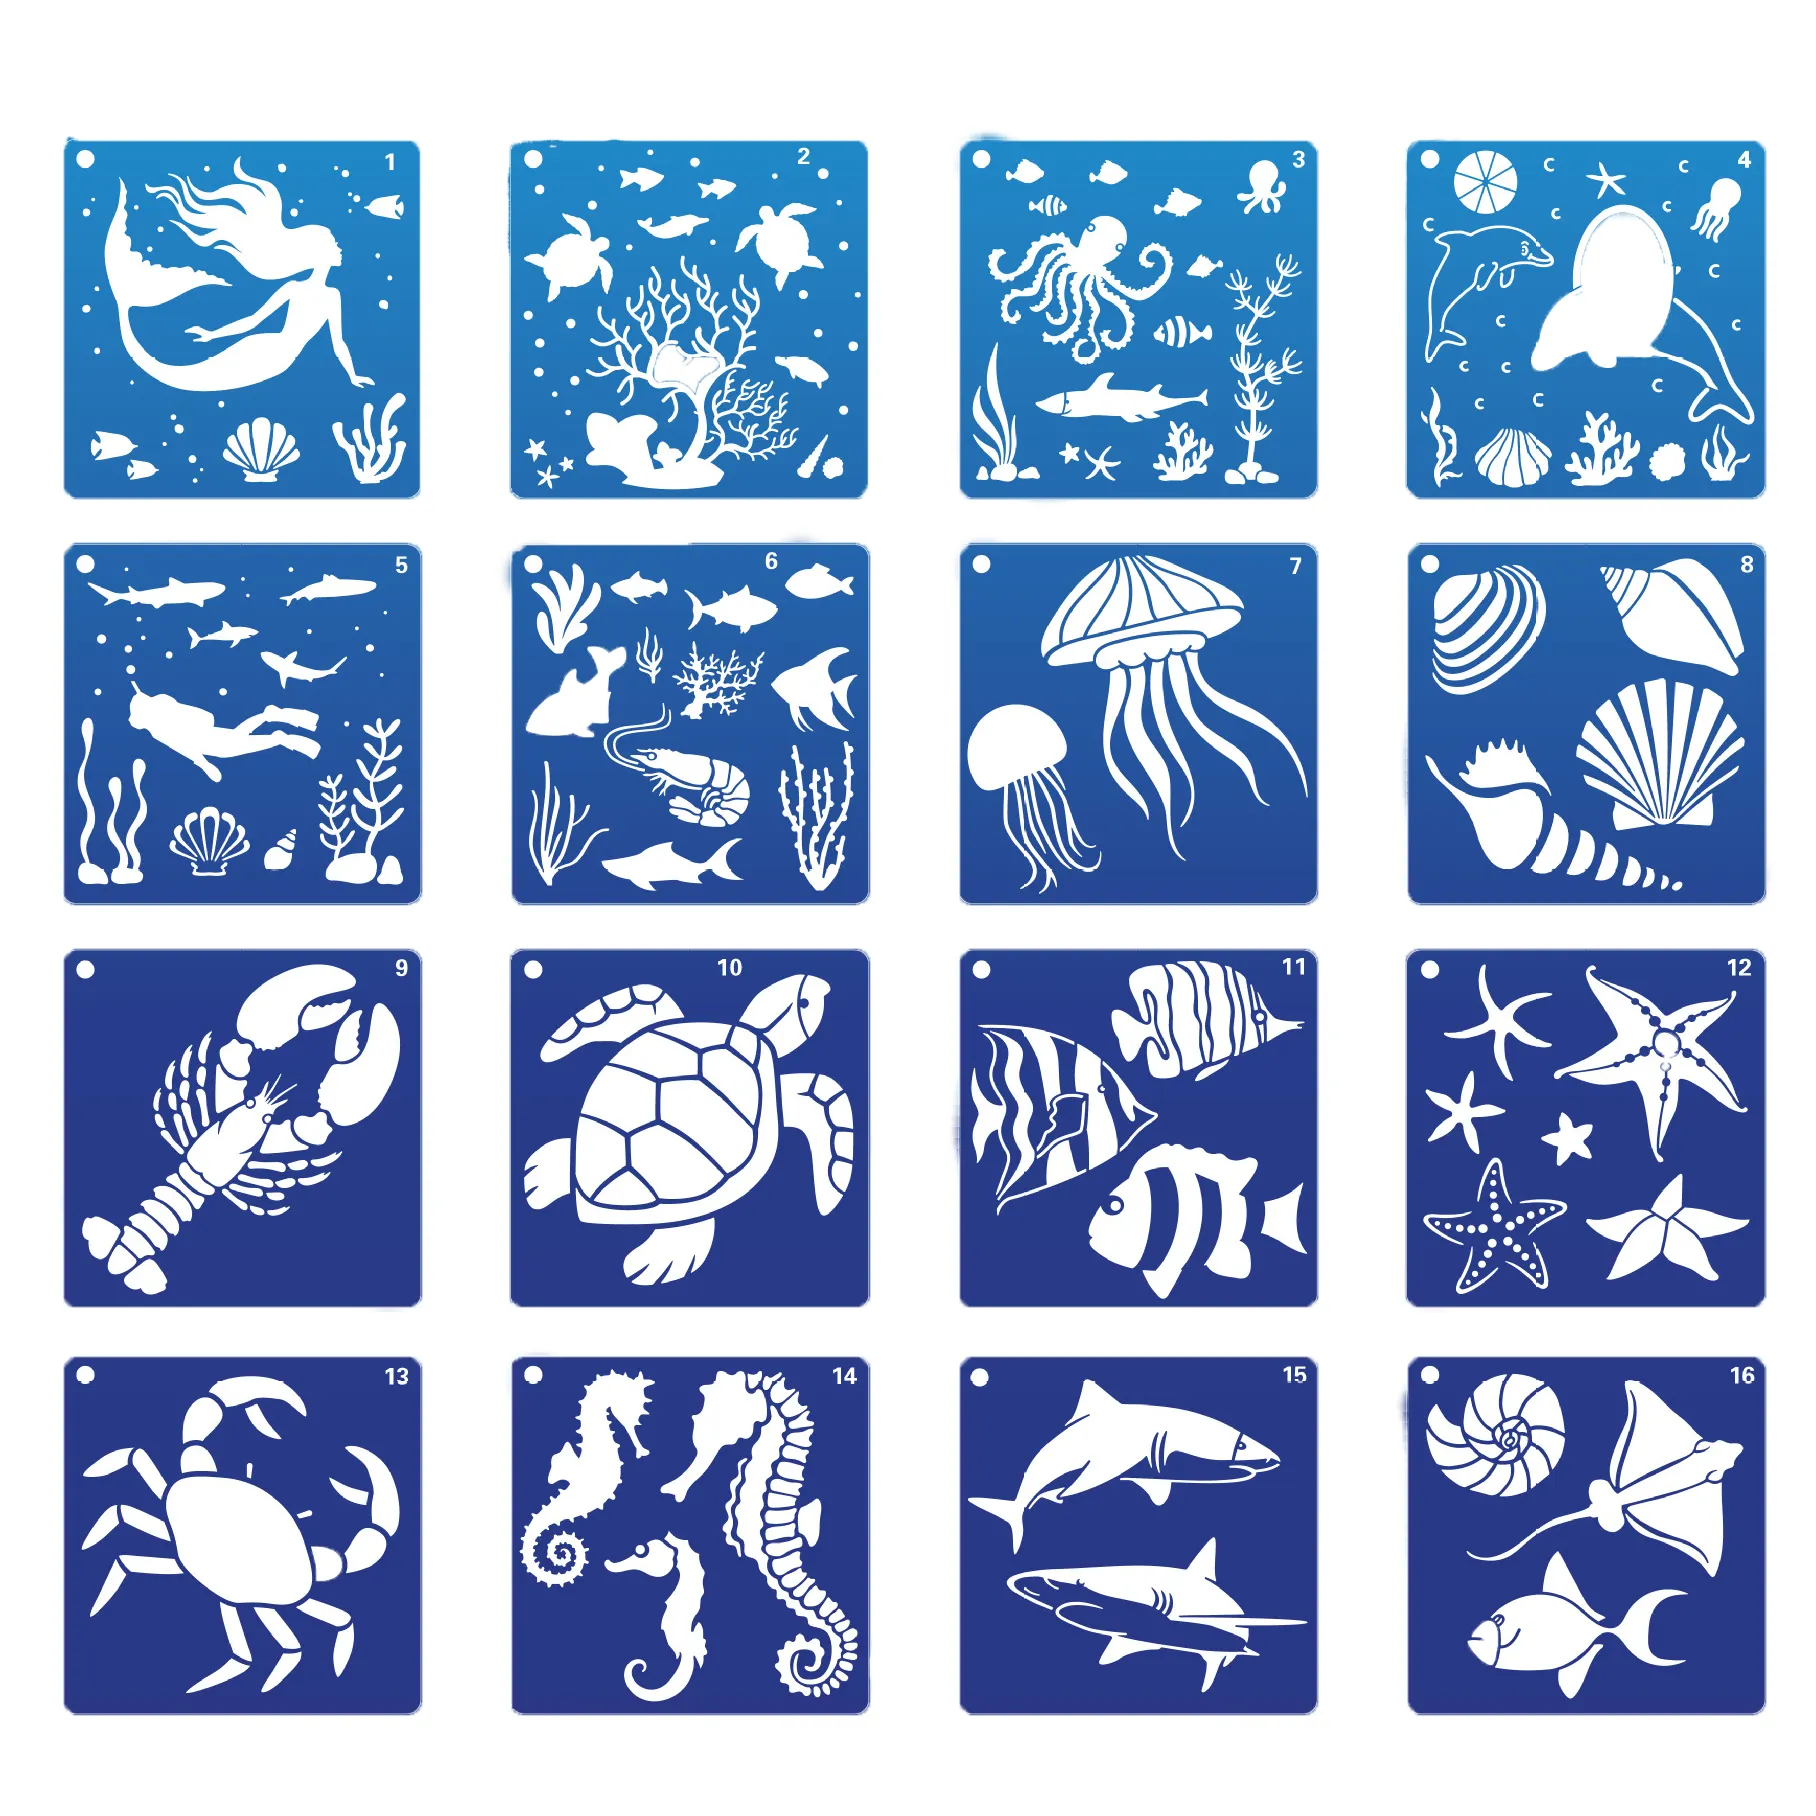 Novo 16 Pack Oceano Criaturas Stencil Mar Animal Pintura Stencils Modelo para Piso Parede Telha Tecido Móveis Stencils Pintura